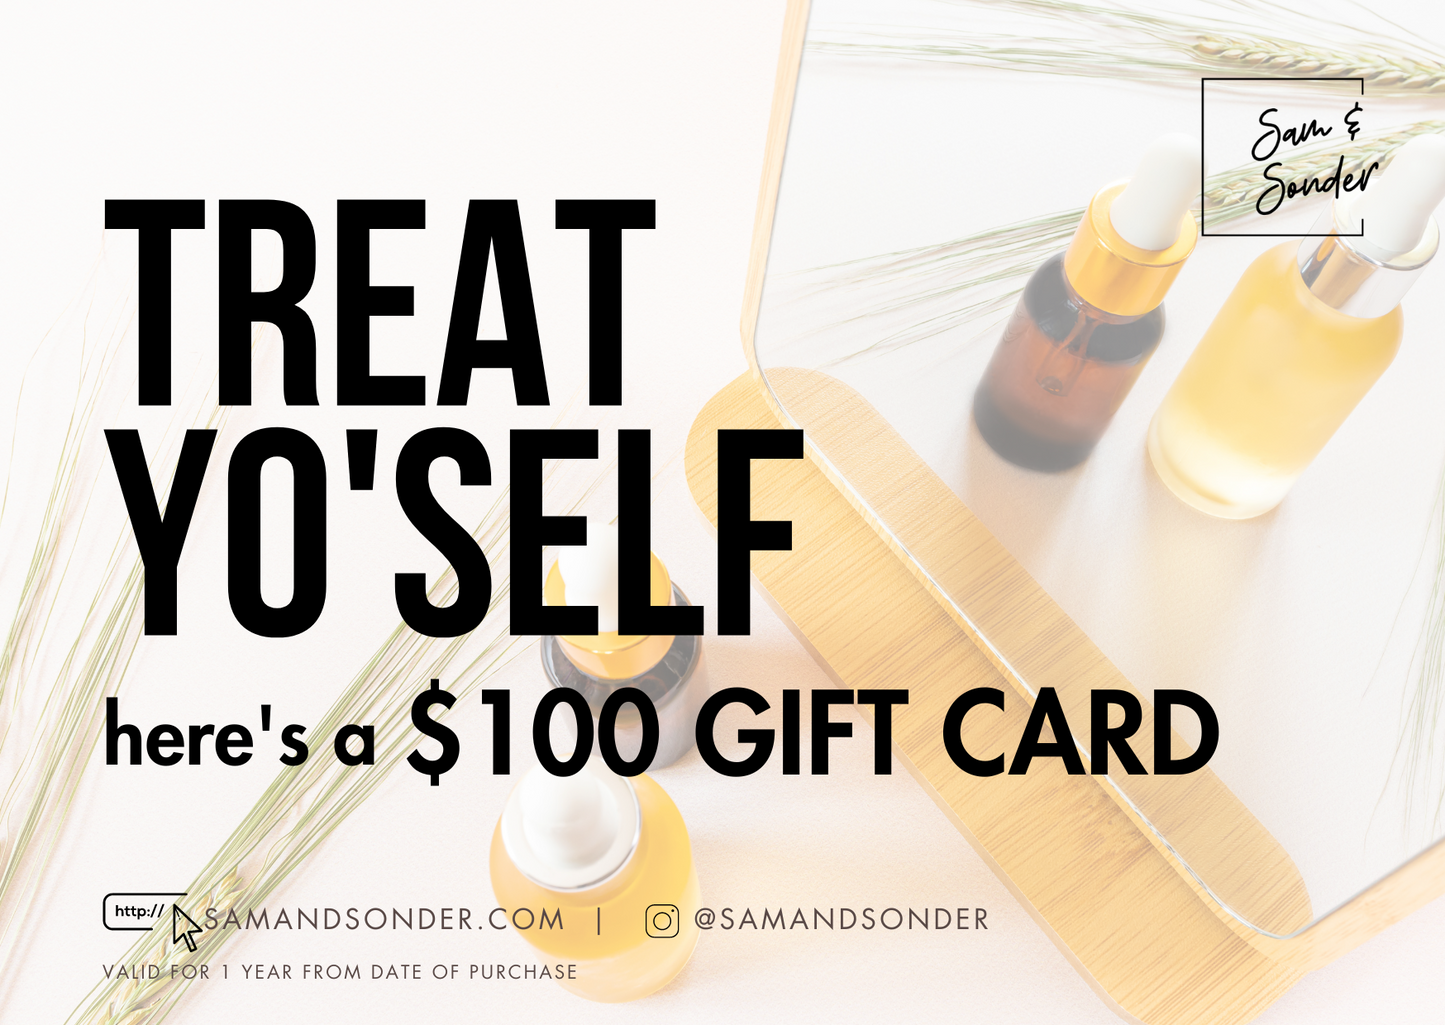 Sam & Sonder Gift Cards